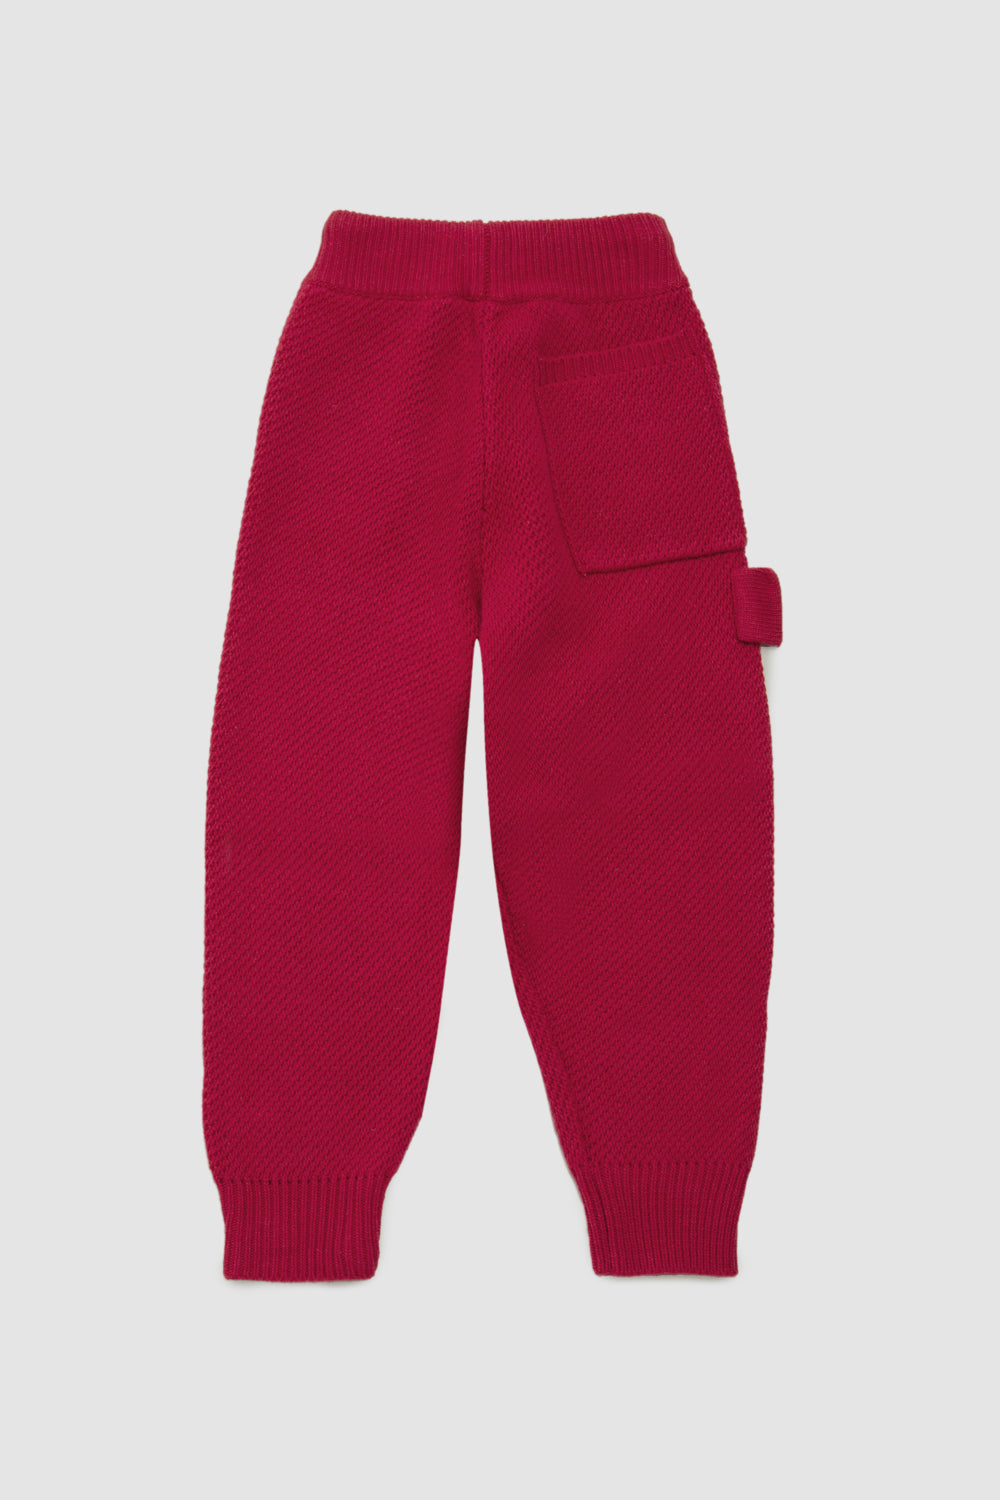 Pink Knitwear Trousers